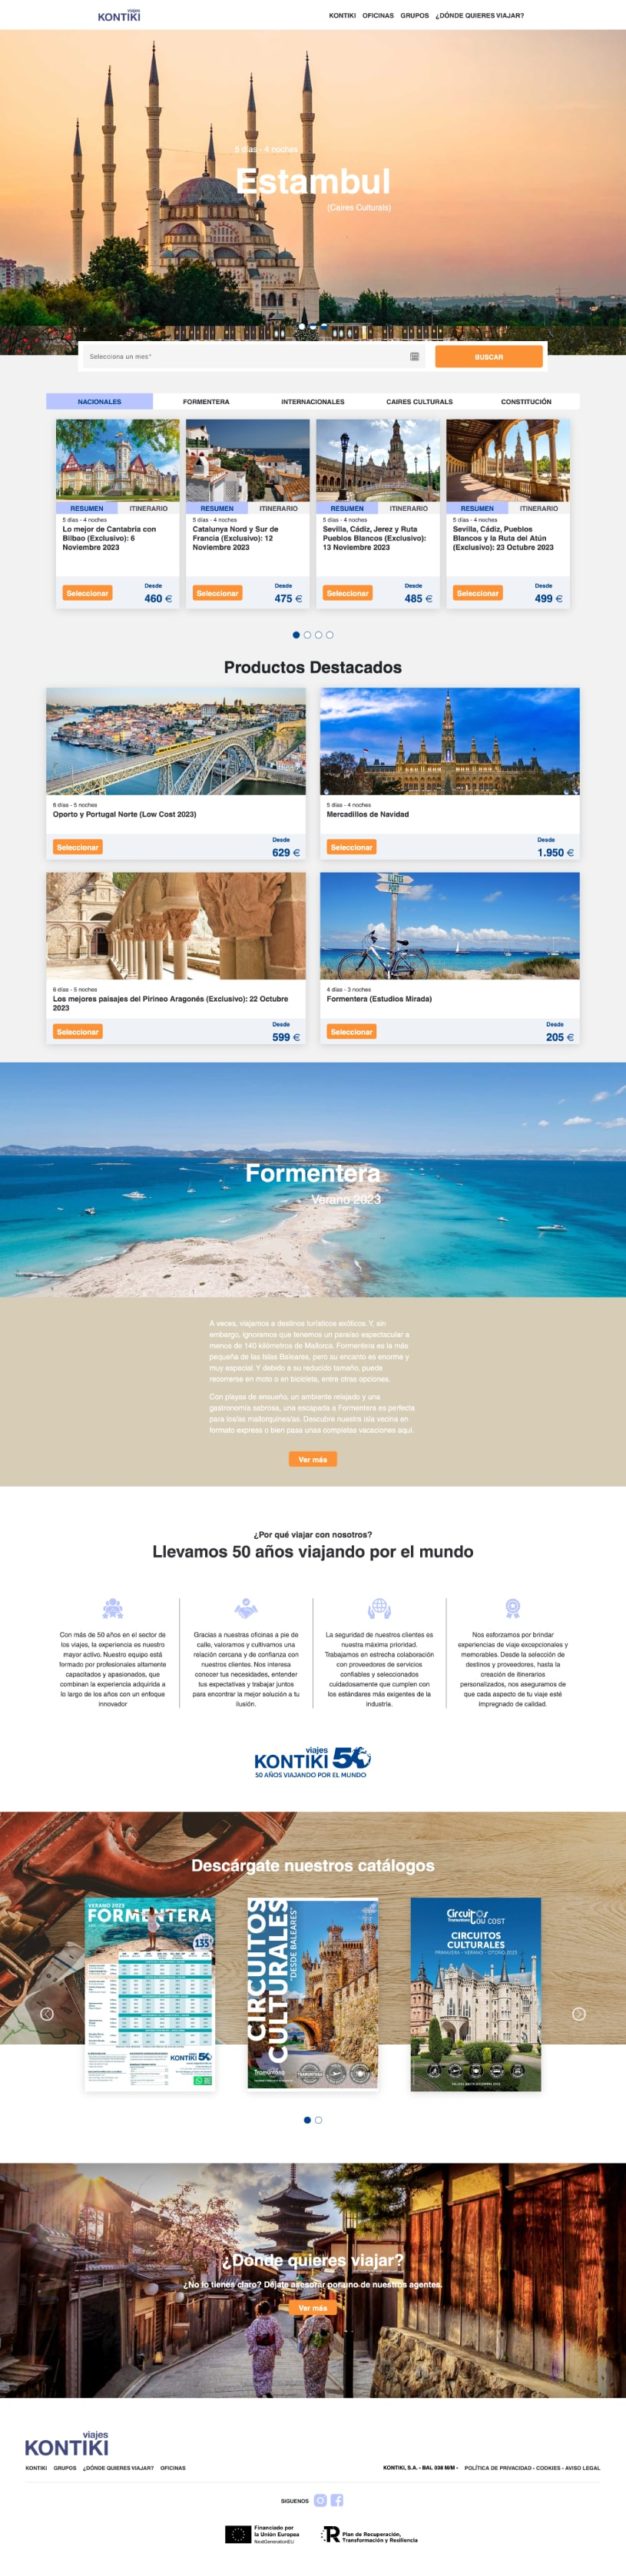 Kontiki Viajes - Proyecto página web IT2b